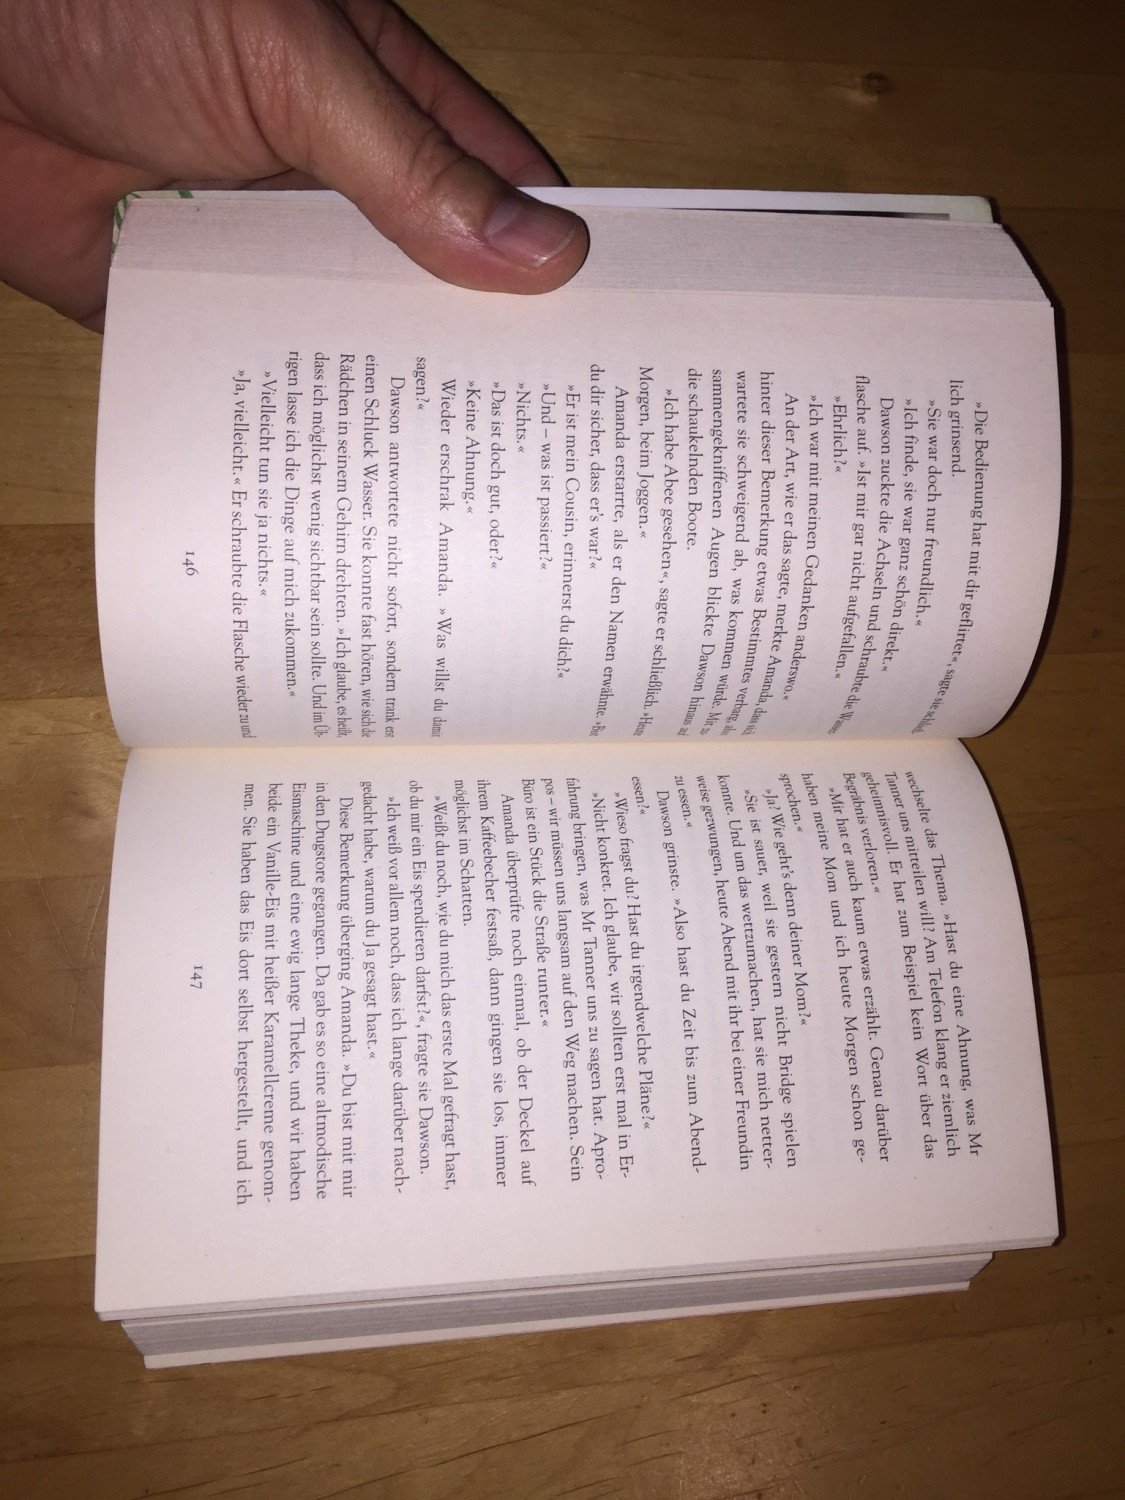 The Best Of Me Mein Weg Zu Dir Nicholas Sparks Buch Gebraucht Kaufen A02jnncq01zzs